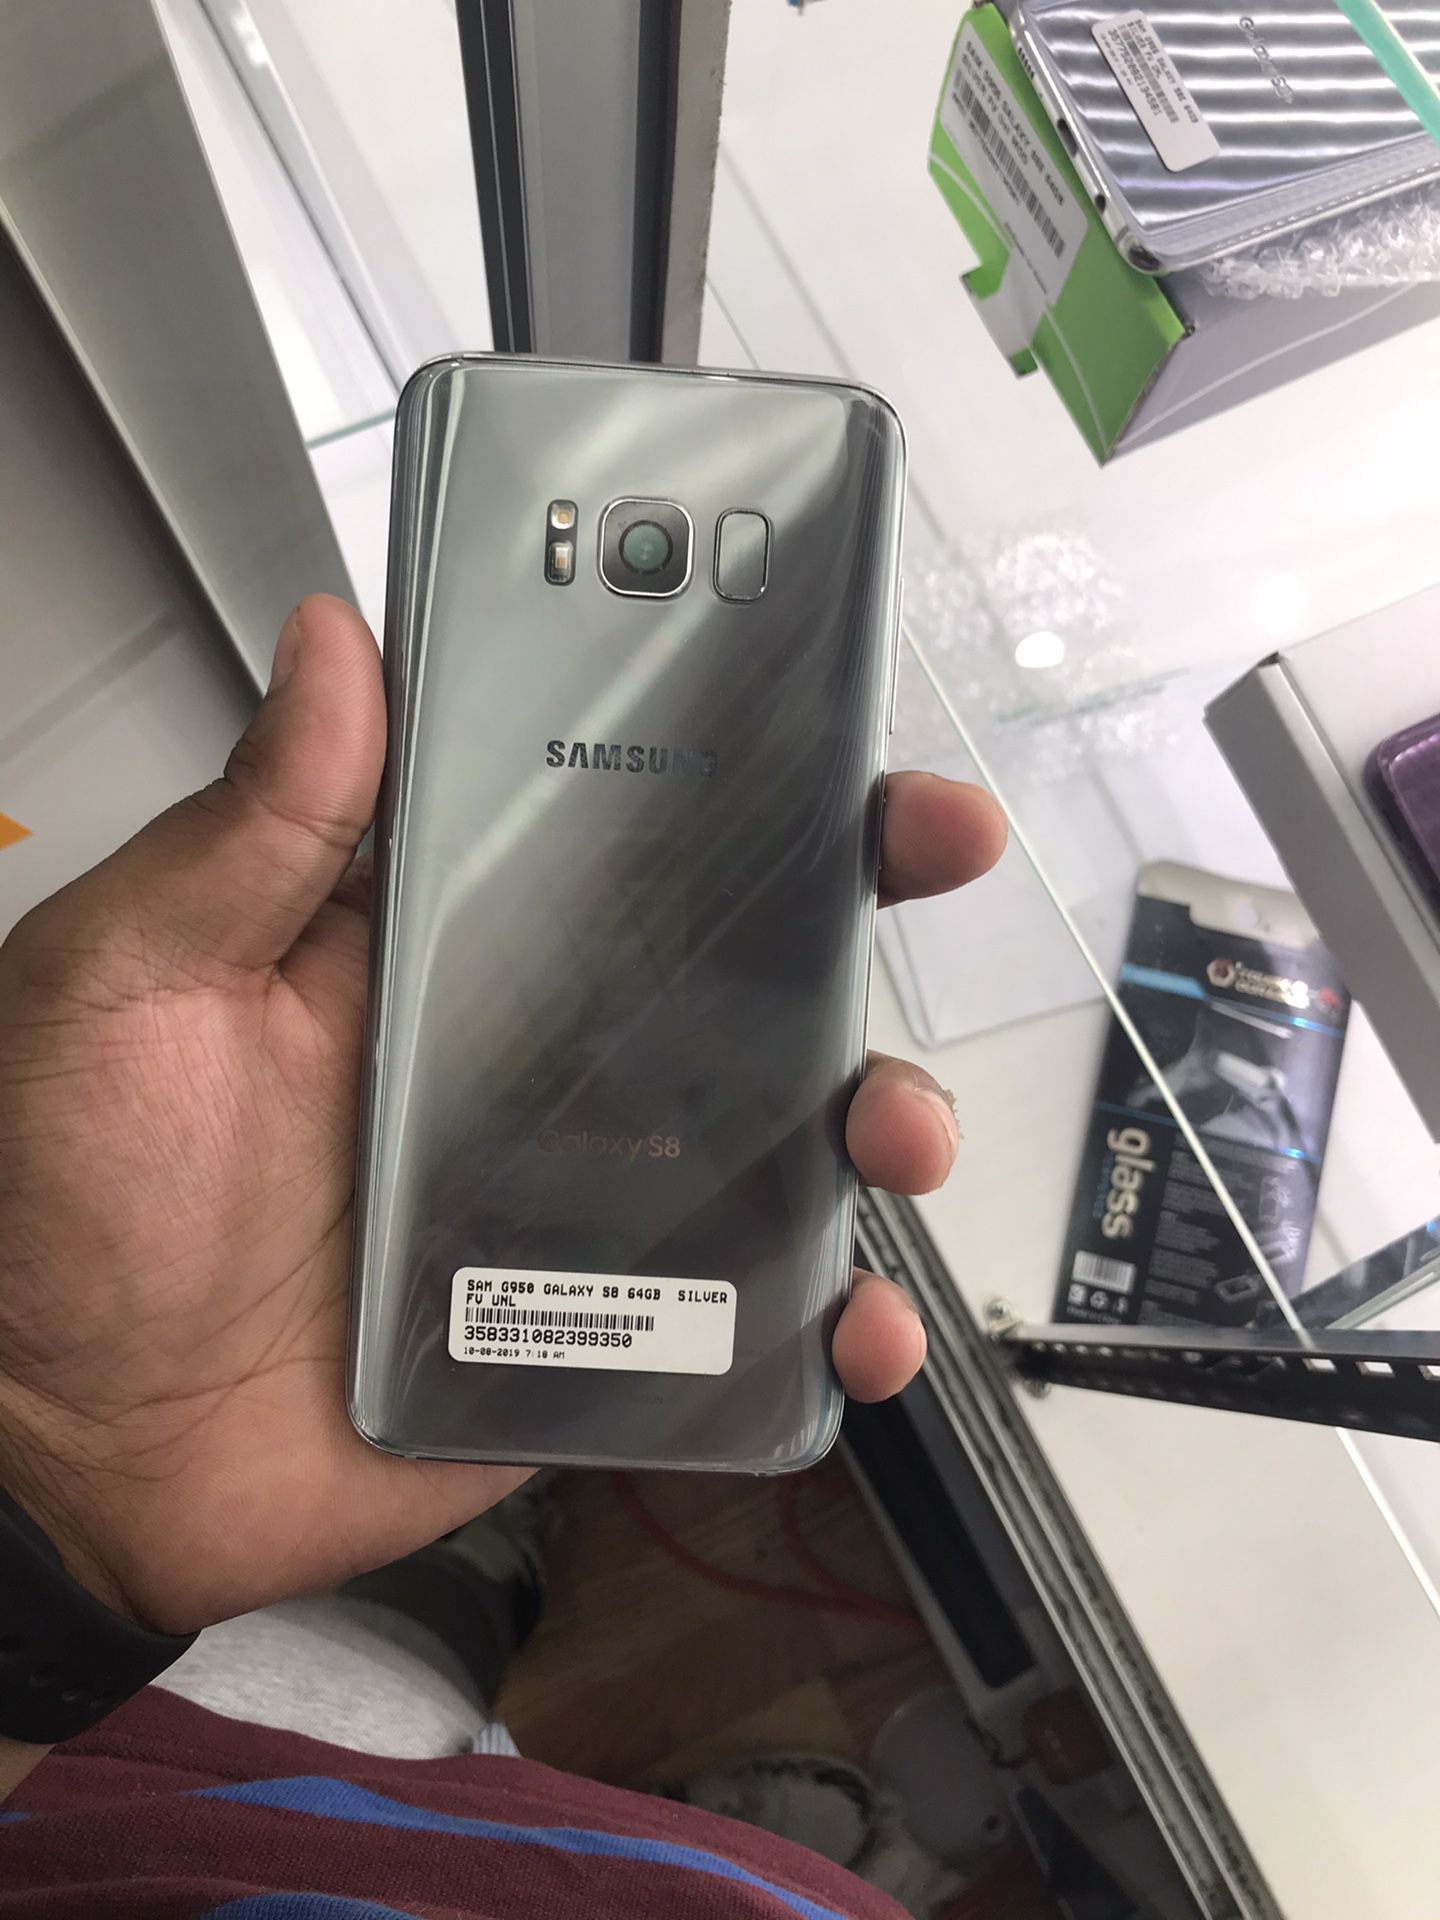 Samsung galaxy s8 64gb unlocked